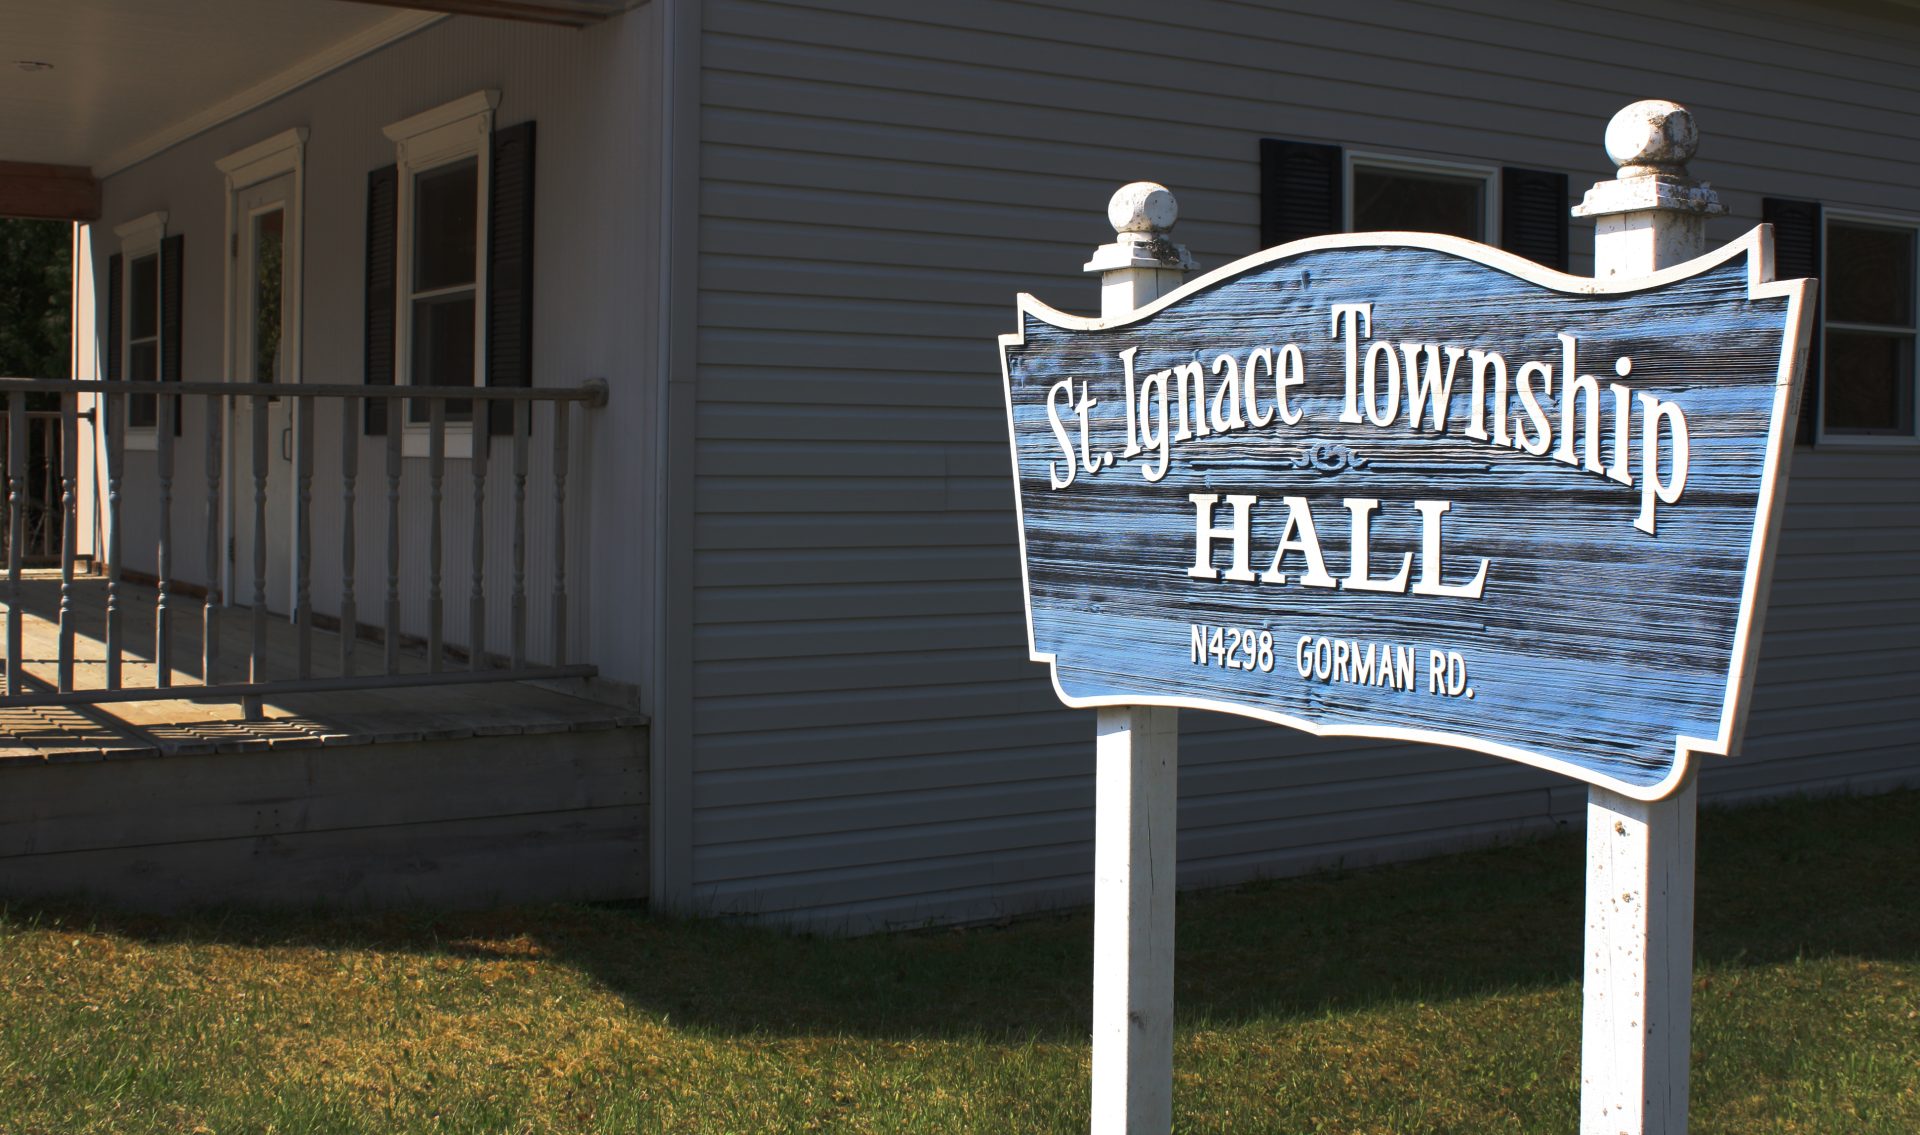 St. Ignace Township Hall Sign near building